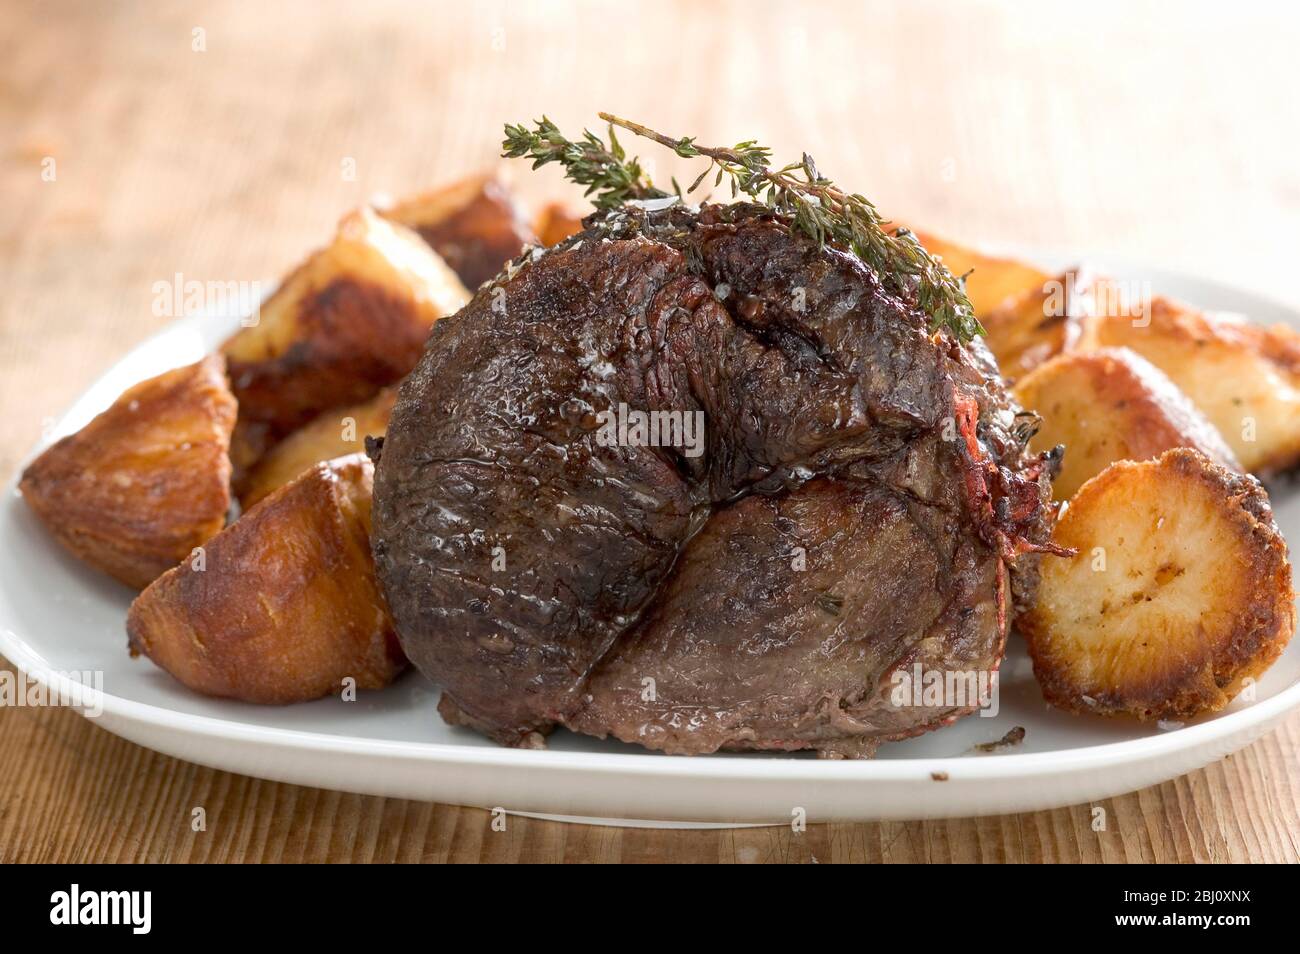 Traditionelles britisches mittagessen am sonntag mit Roastbeef und Bratkartoffeln - Stockfoto